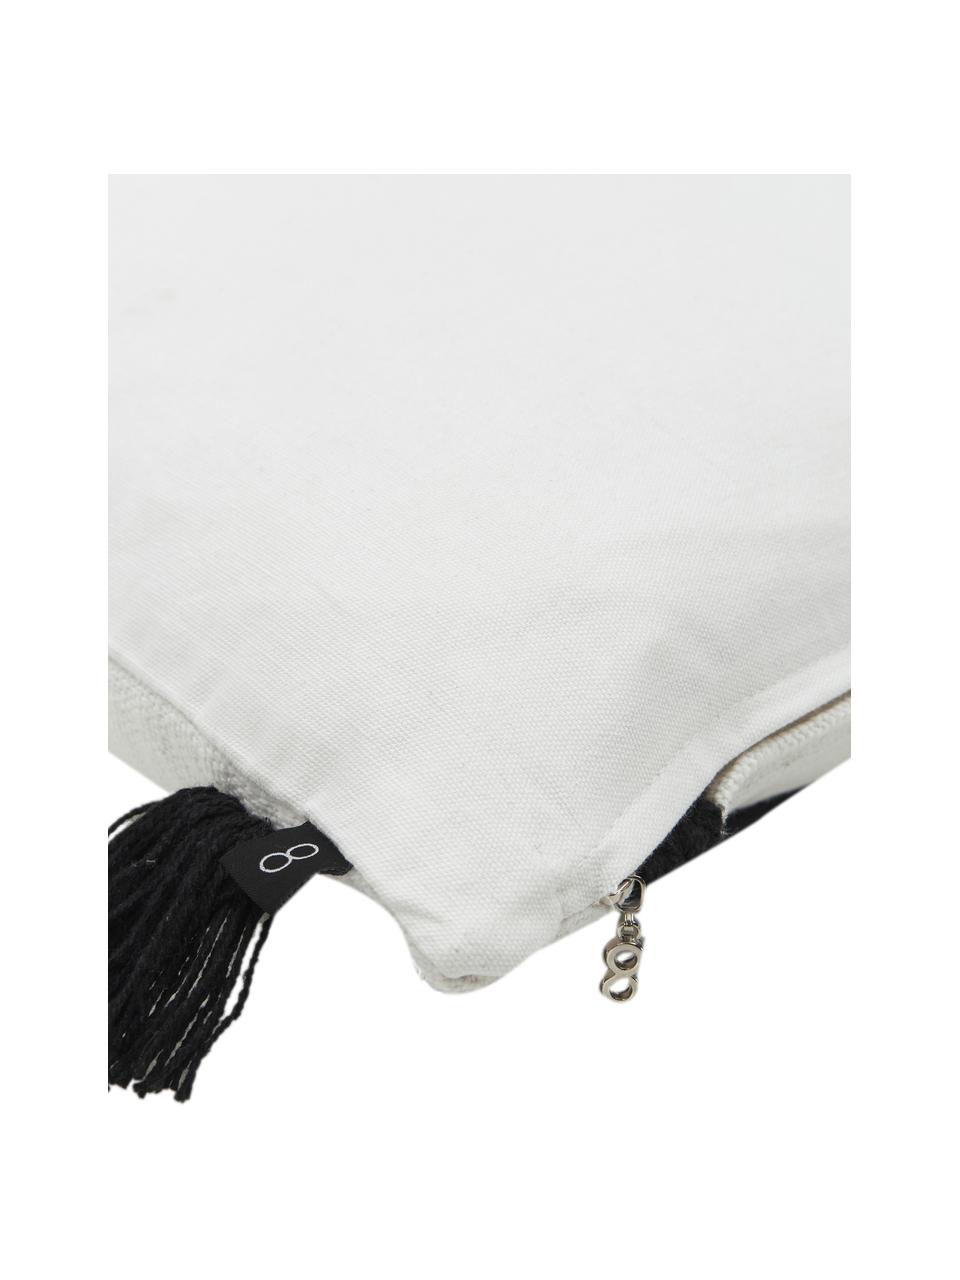 Katoenen kussenhoes Piazza met kwastjes, 100% katoen, Wit, zwart, B 50 x L 50 cm